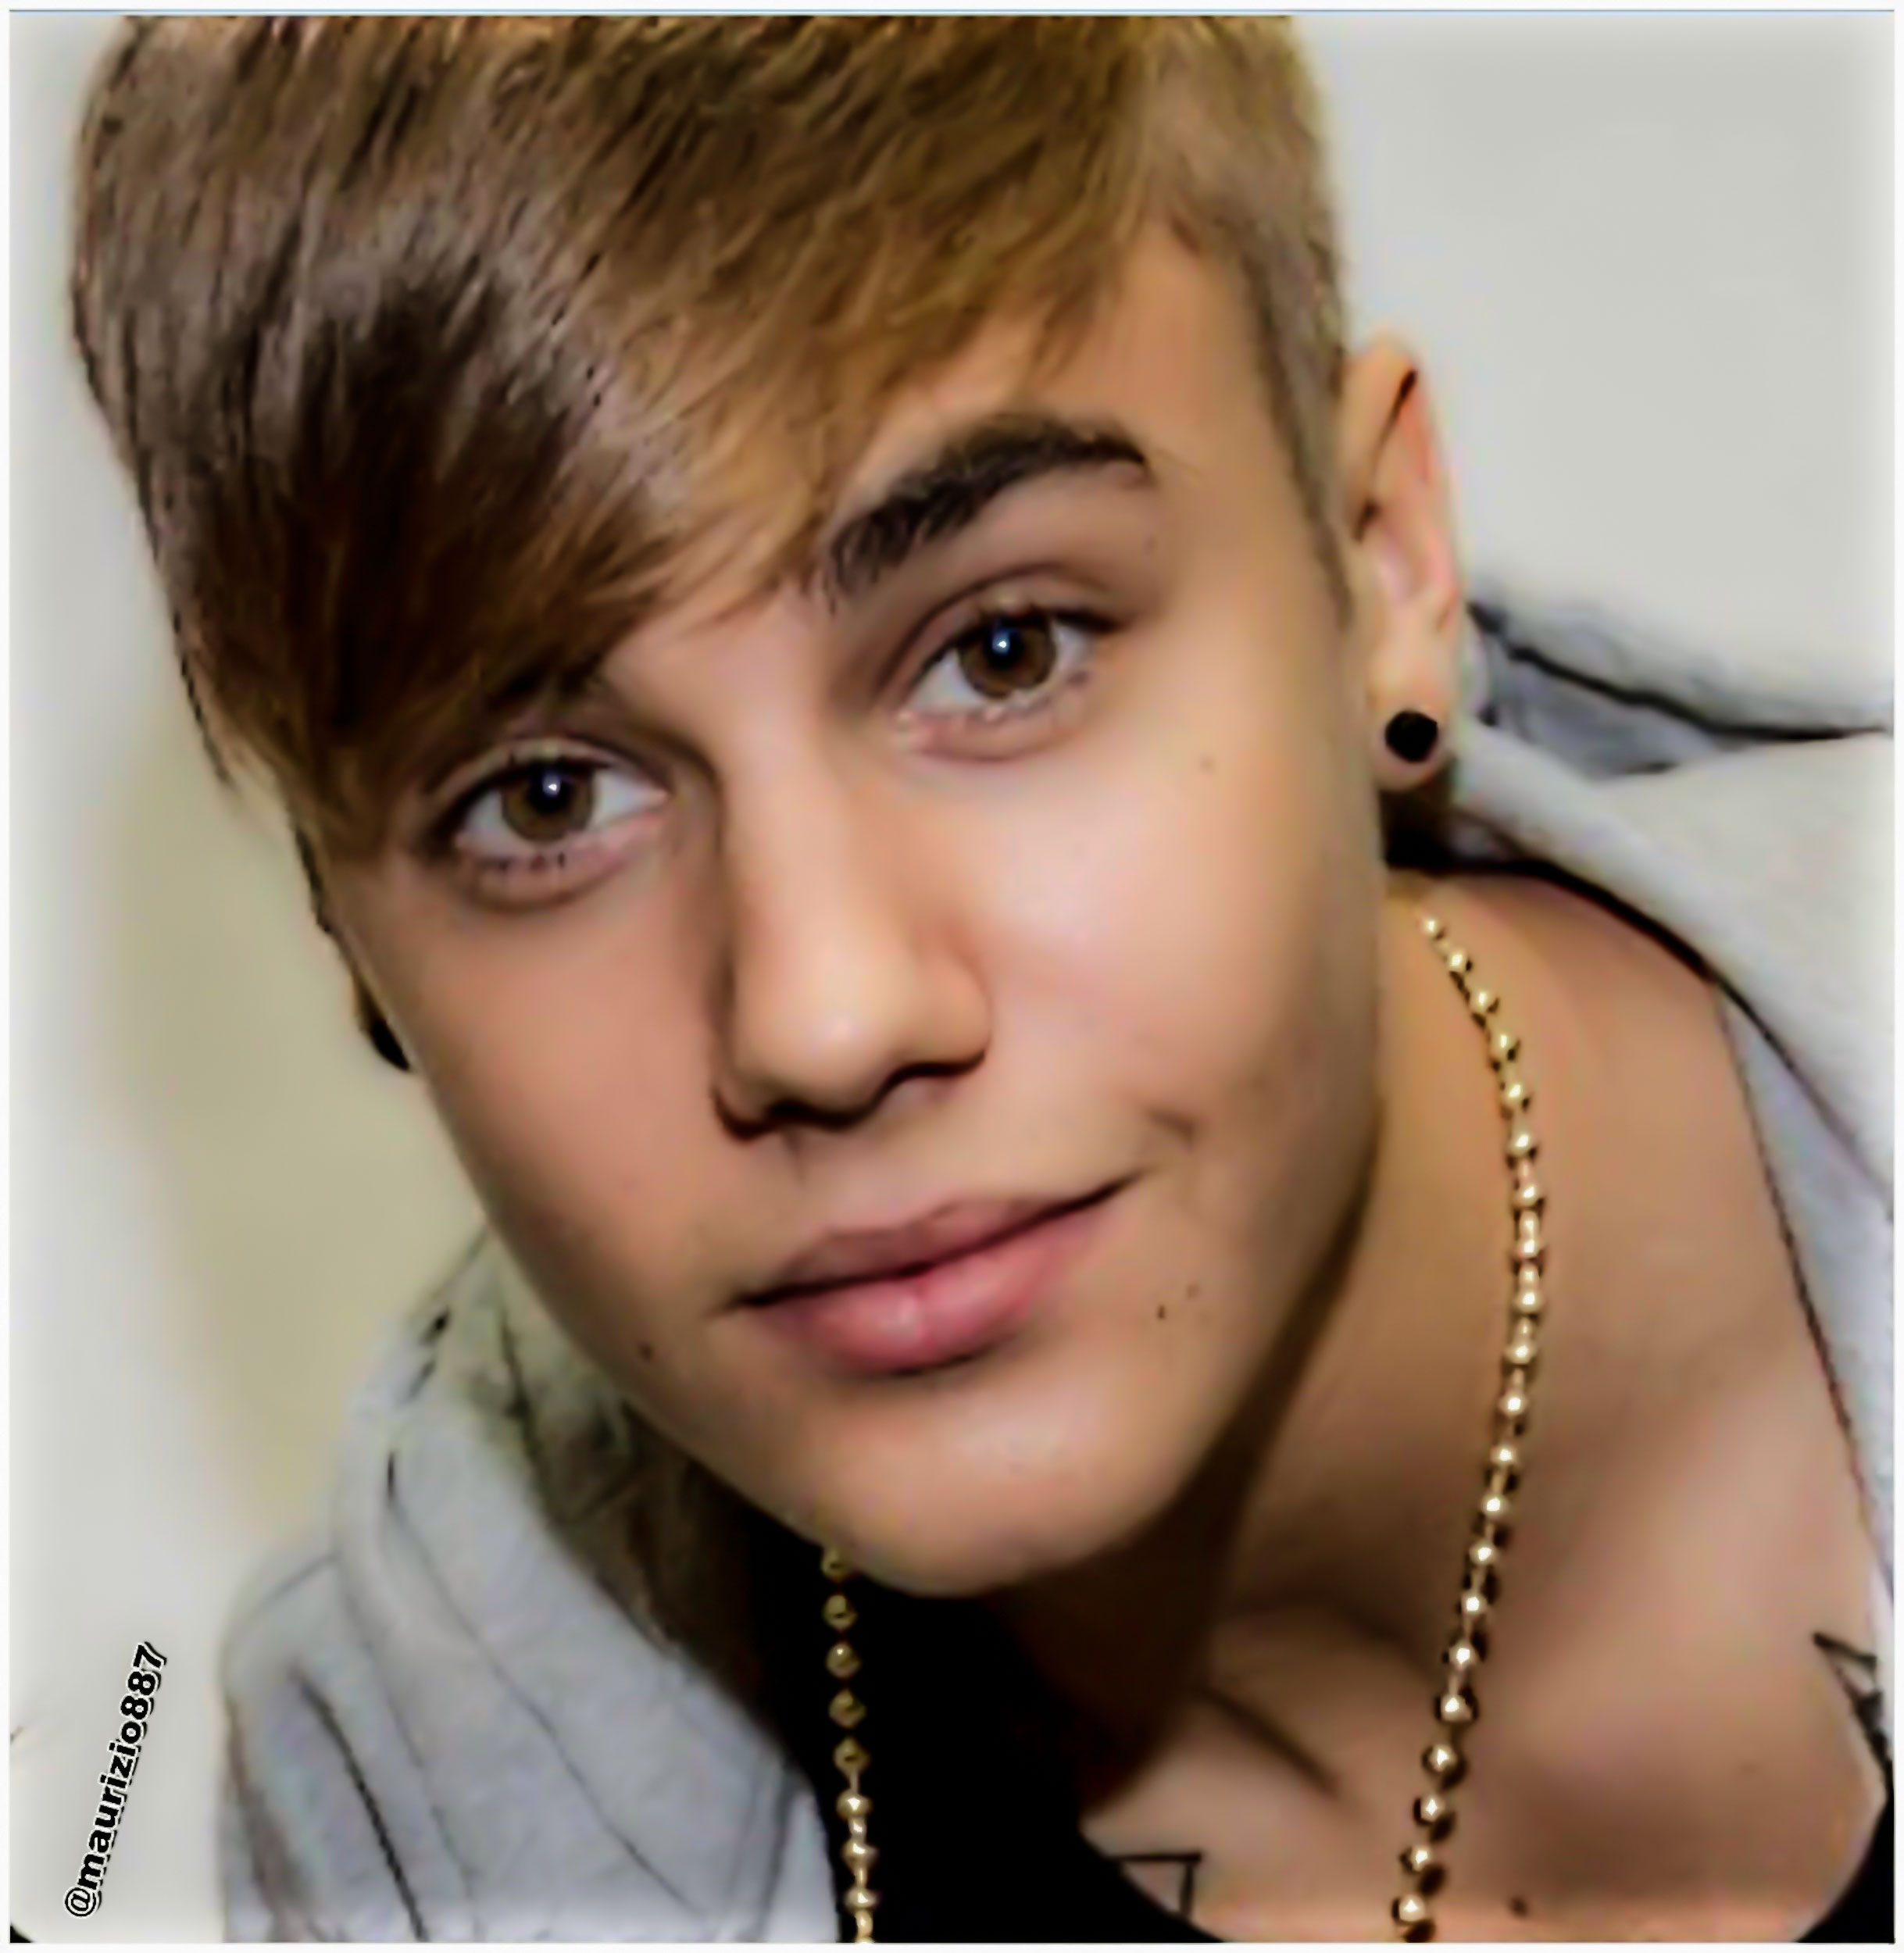 justin bieber 2014 - Justin Bieber Photo (37099071) - Fanpop